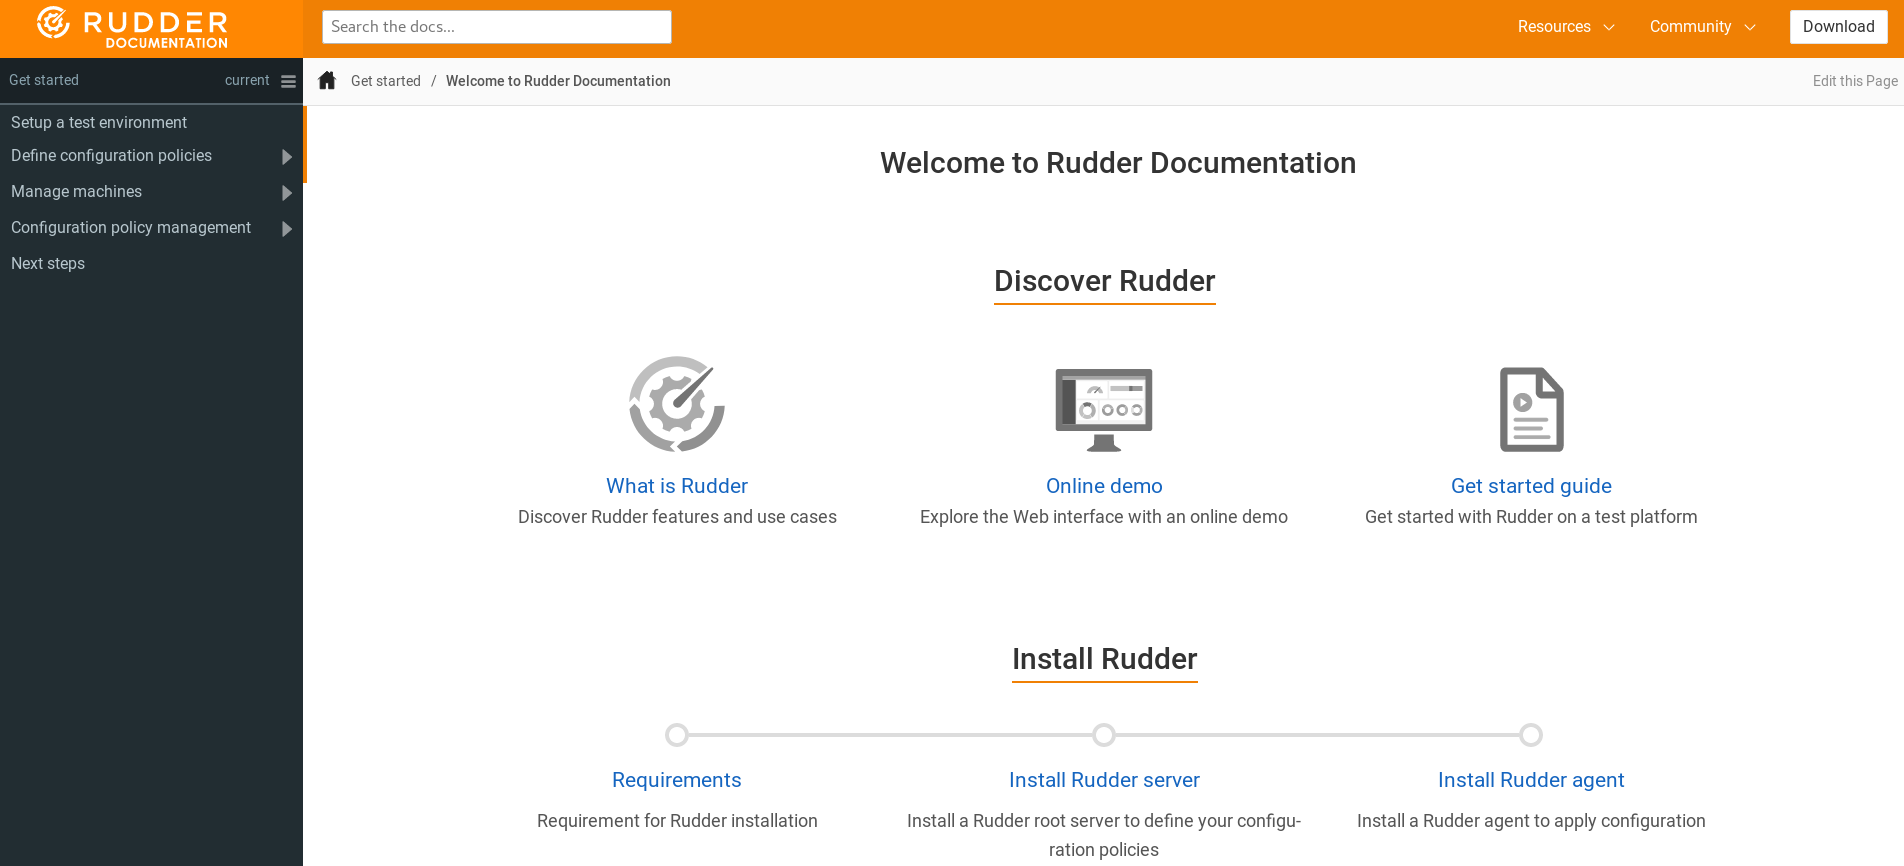 RUDDER 5 — interface de la nouvelle documentation docs.rudder.io